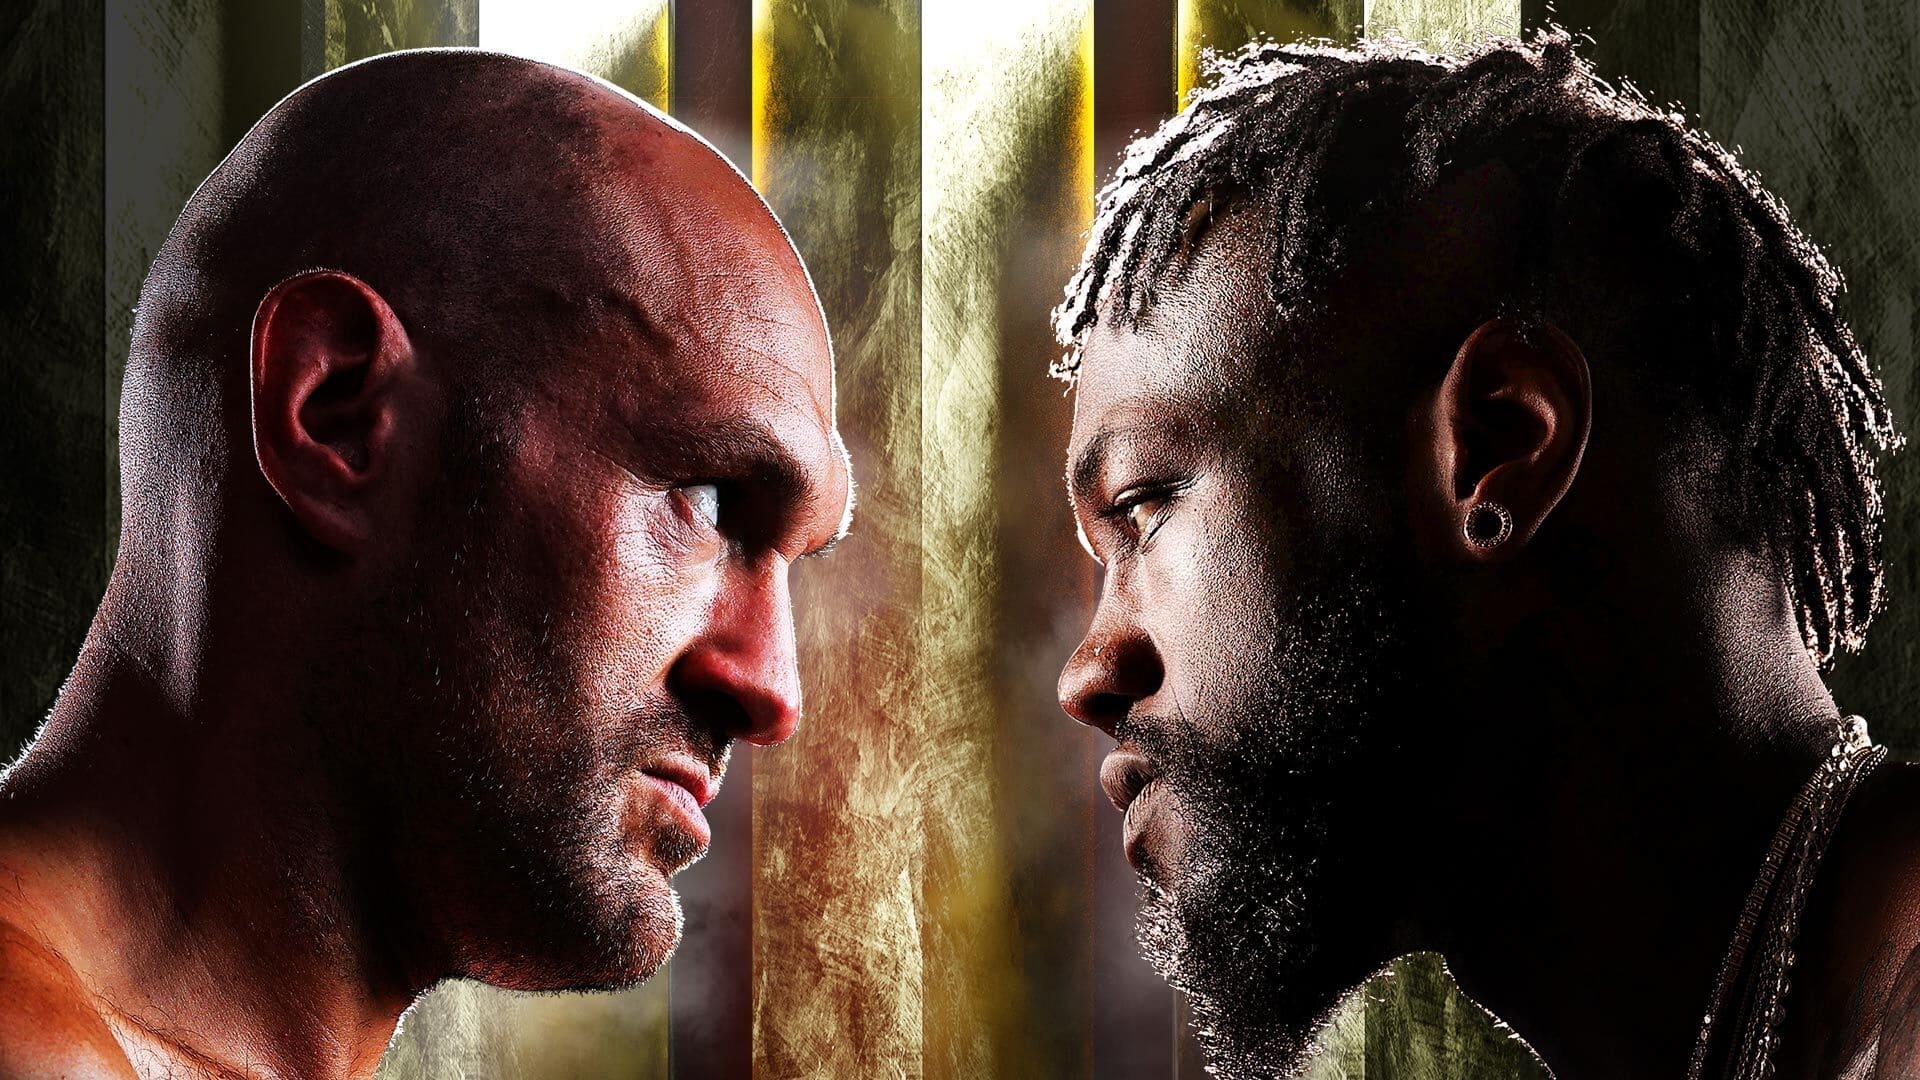 Tyson Fury vs. Deontay Wilder III (2021)